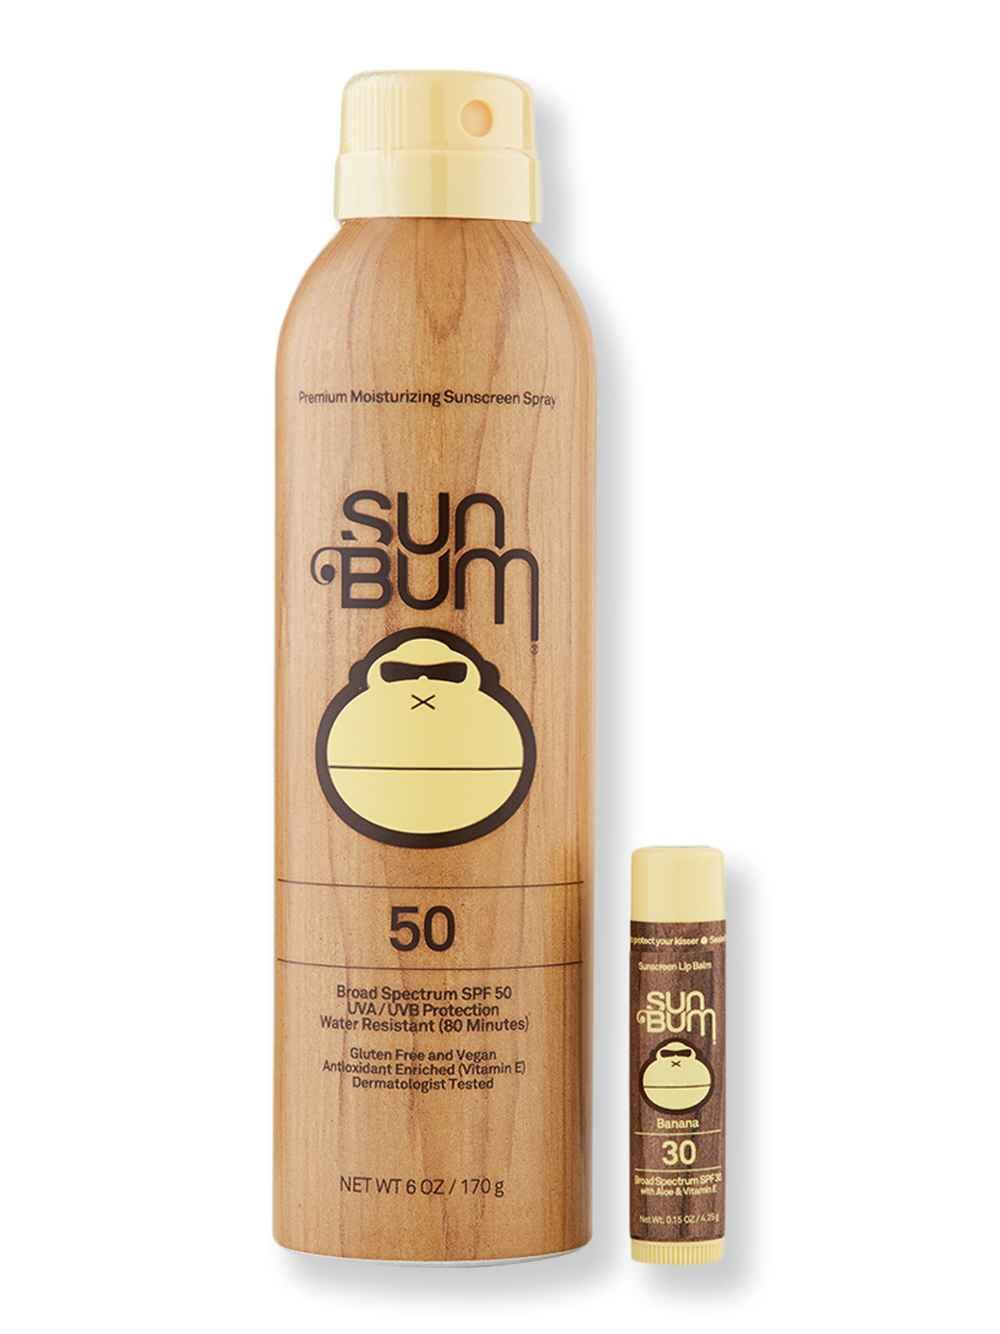 Sun Bum Sun Bum SPF 50 Sunscreen Spray 6 oz & SPF 30 Lip Balm Banana Body Sunscreens 